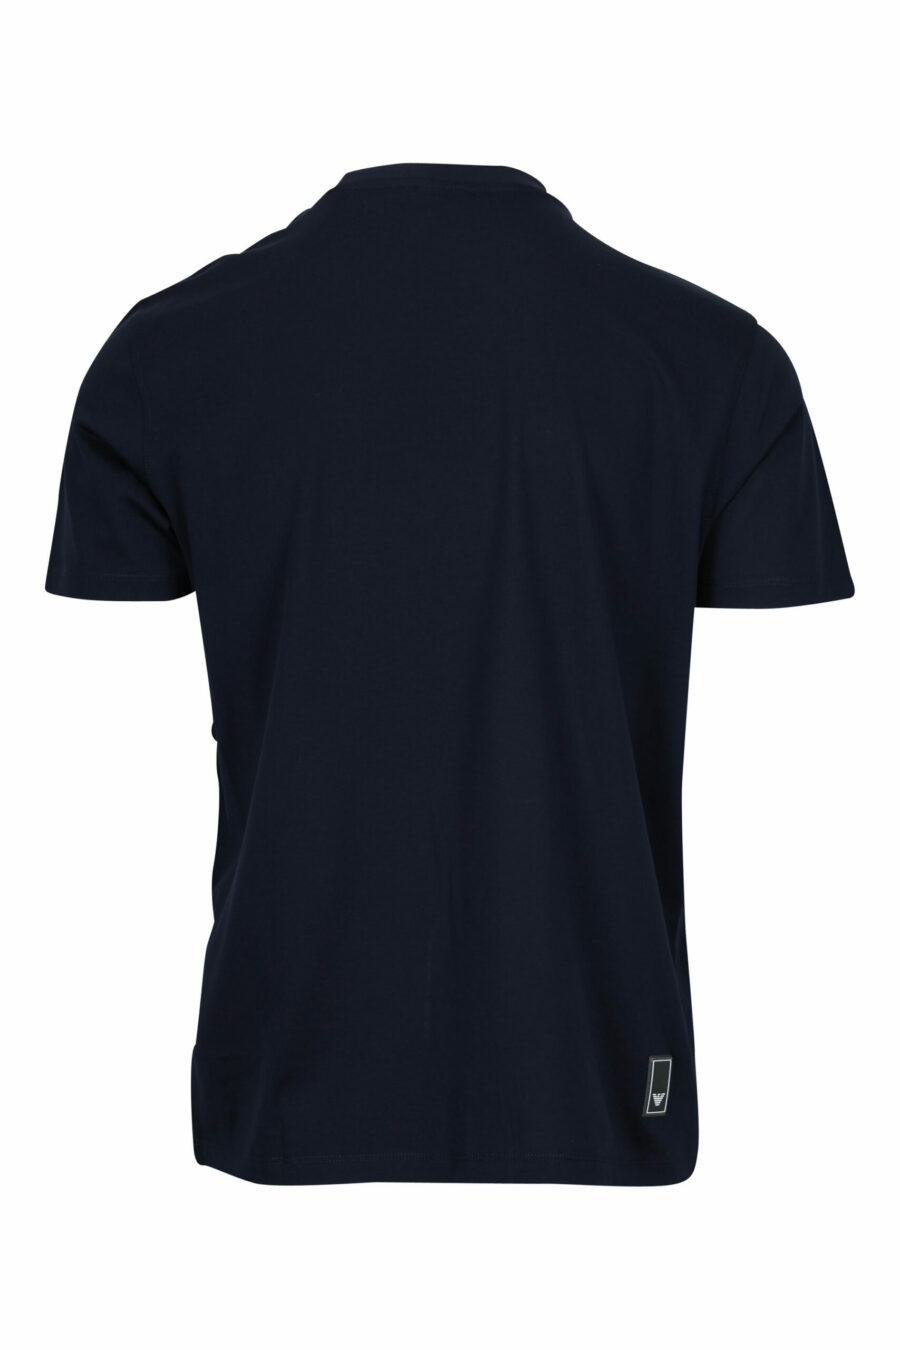 Camiseta azul oscuro con minilogo águila - 8058997155687 1 scaled